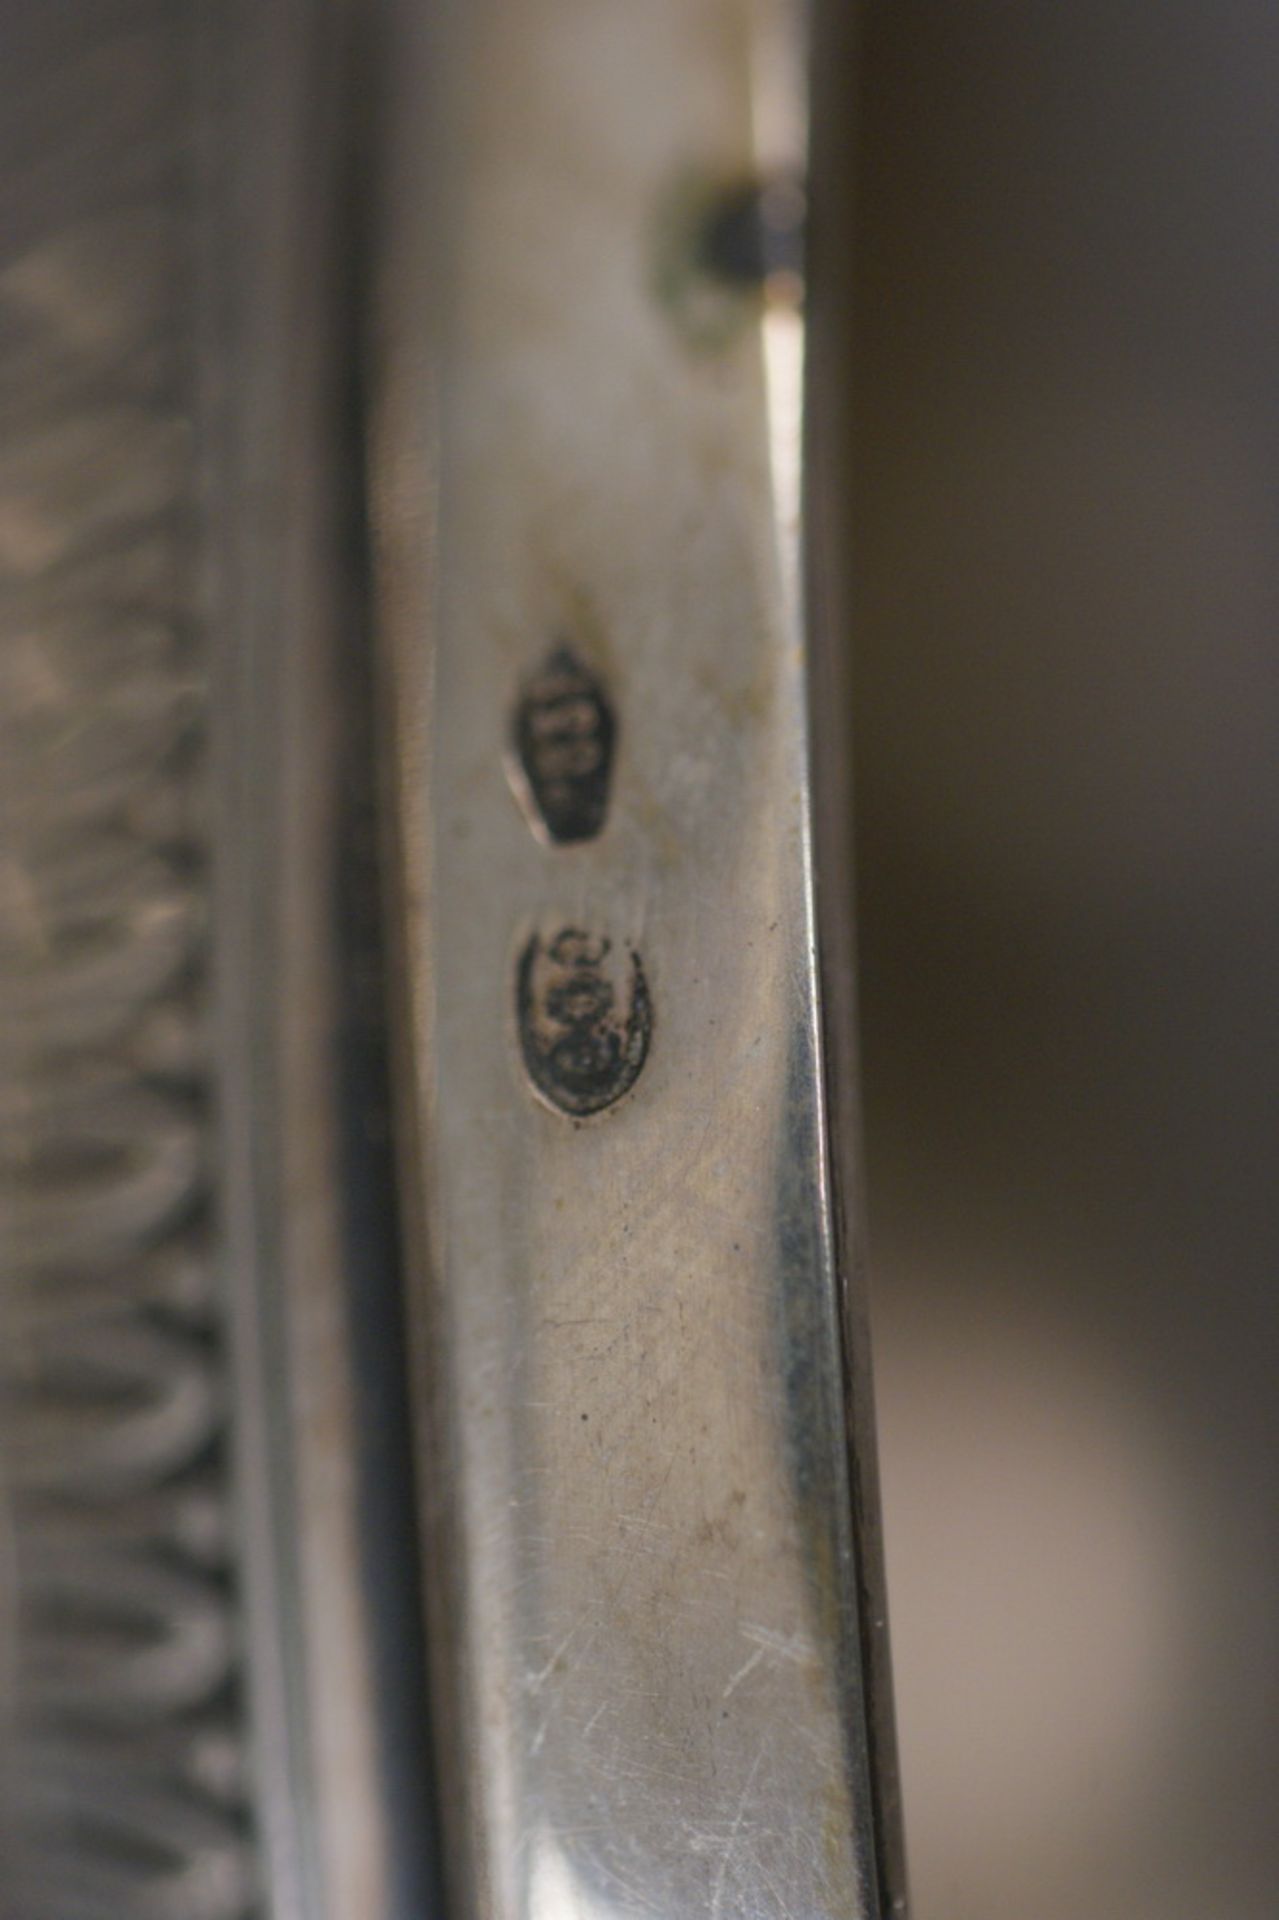 DECKELAMPHORE Silberpokal mit Deckel, 800 gepunzt, H 23,5 cm  Mindestpreis: 180 EUR - Bild 7 aus 7